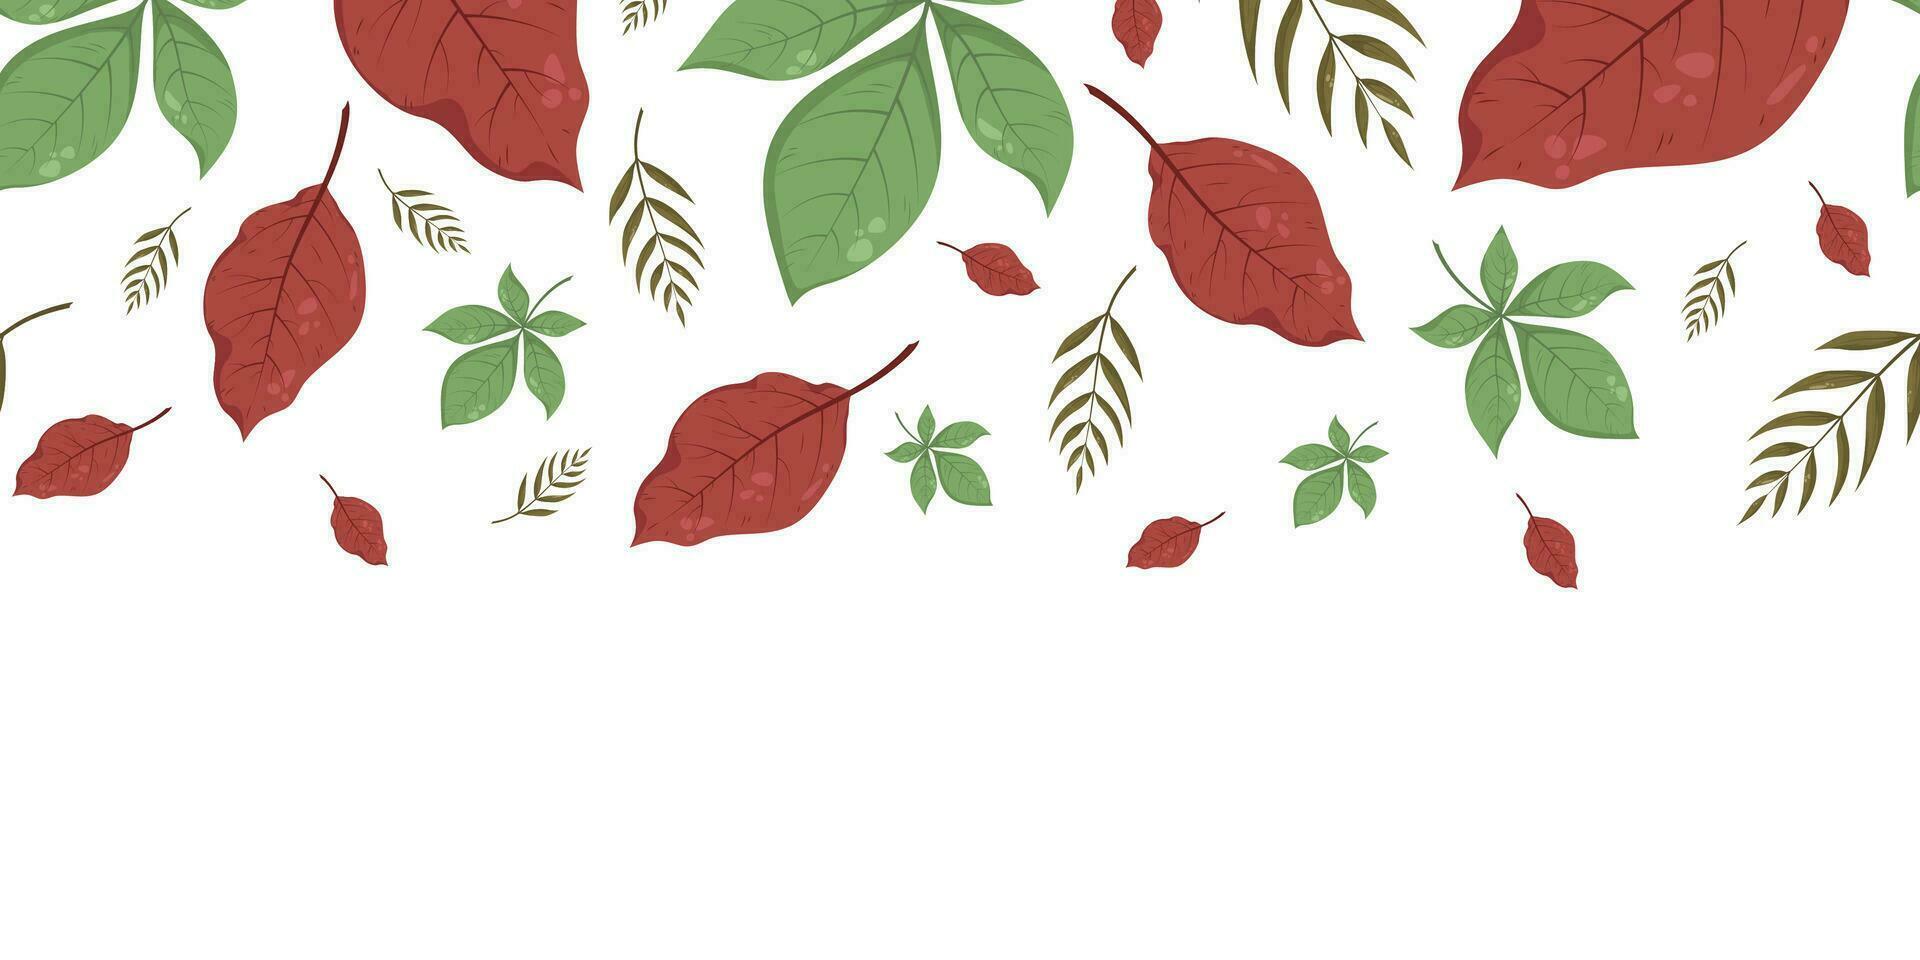 nahtlos horizontal Banner Muster mit Herbst fallen Grün und rot Blätter. perfekt zum Hintergrund, Verpackung Papier, Netz Websites, Hintergrund, Sozial Medien, Blog und Gruß Karten, Werbung vektor